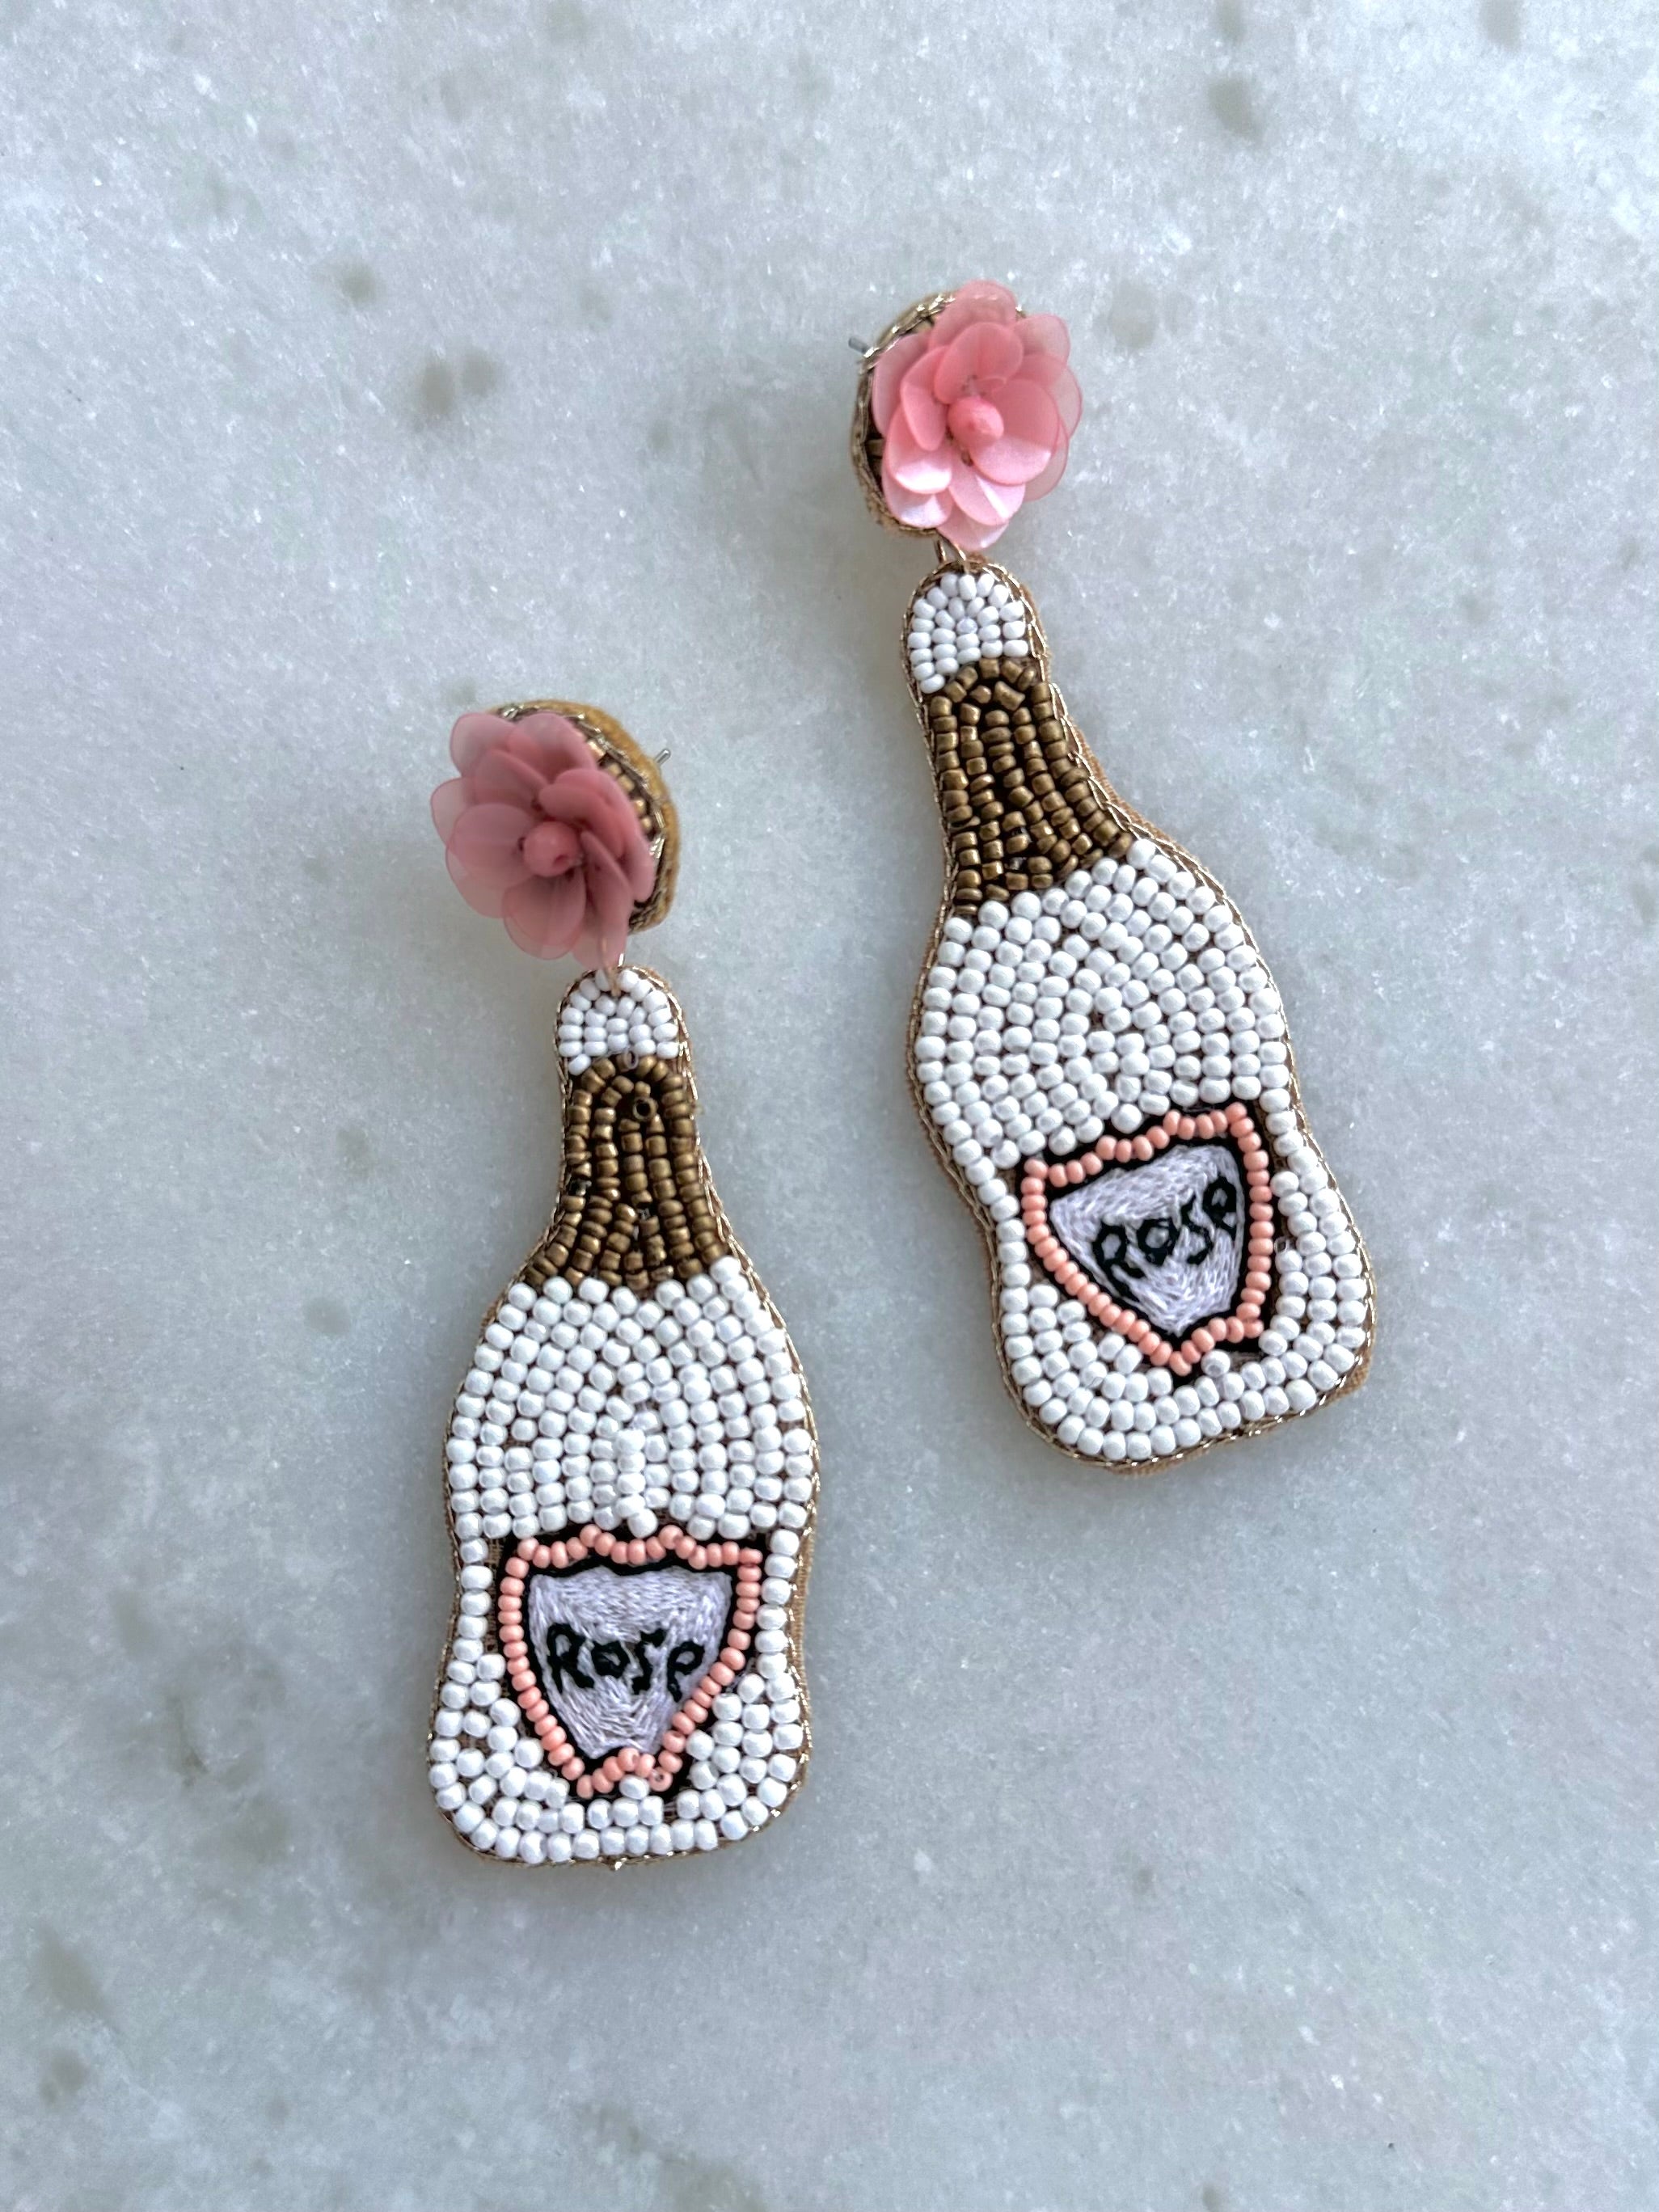 Beaded Rose Bottle Earrings